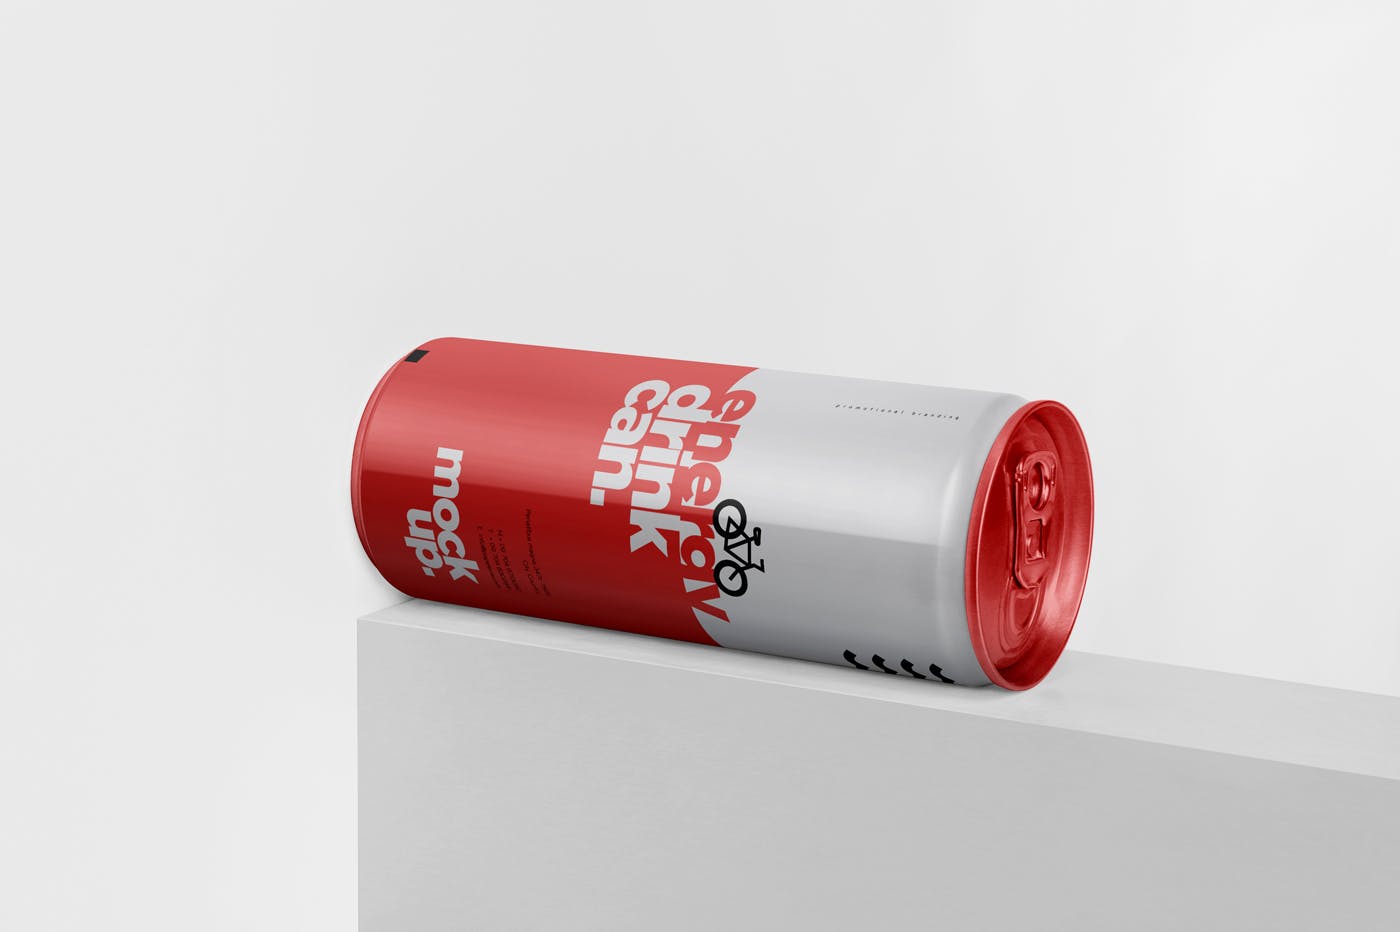 能量饮料易拉罐罐头外观设计蚂蚁素材精选模板 Energy Drink Can Mock-Up – 250 ml插图(2)